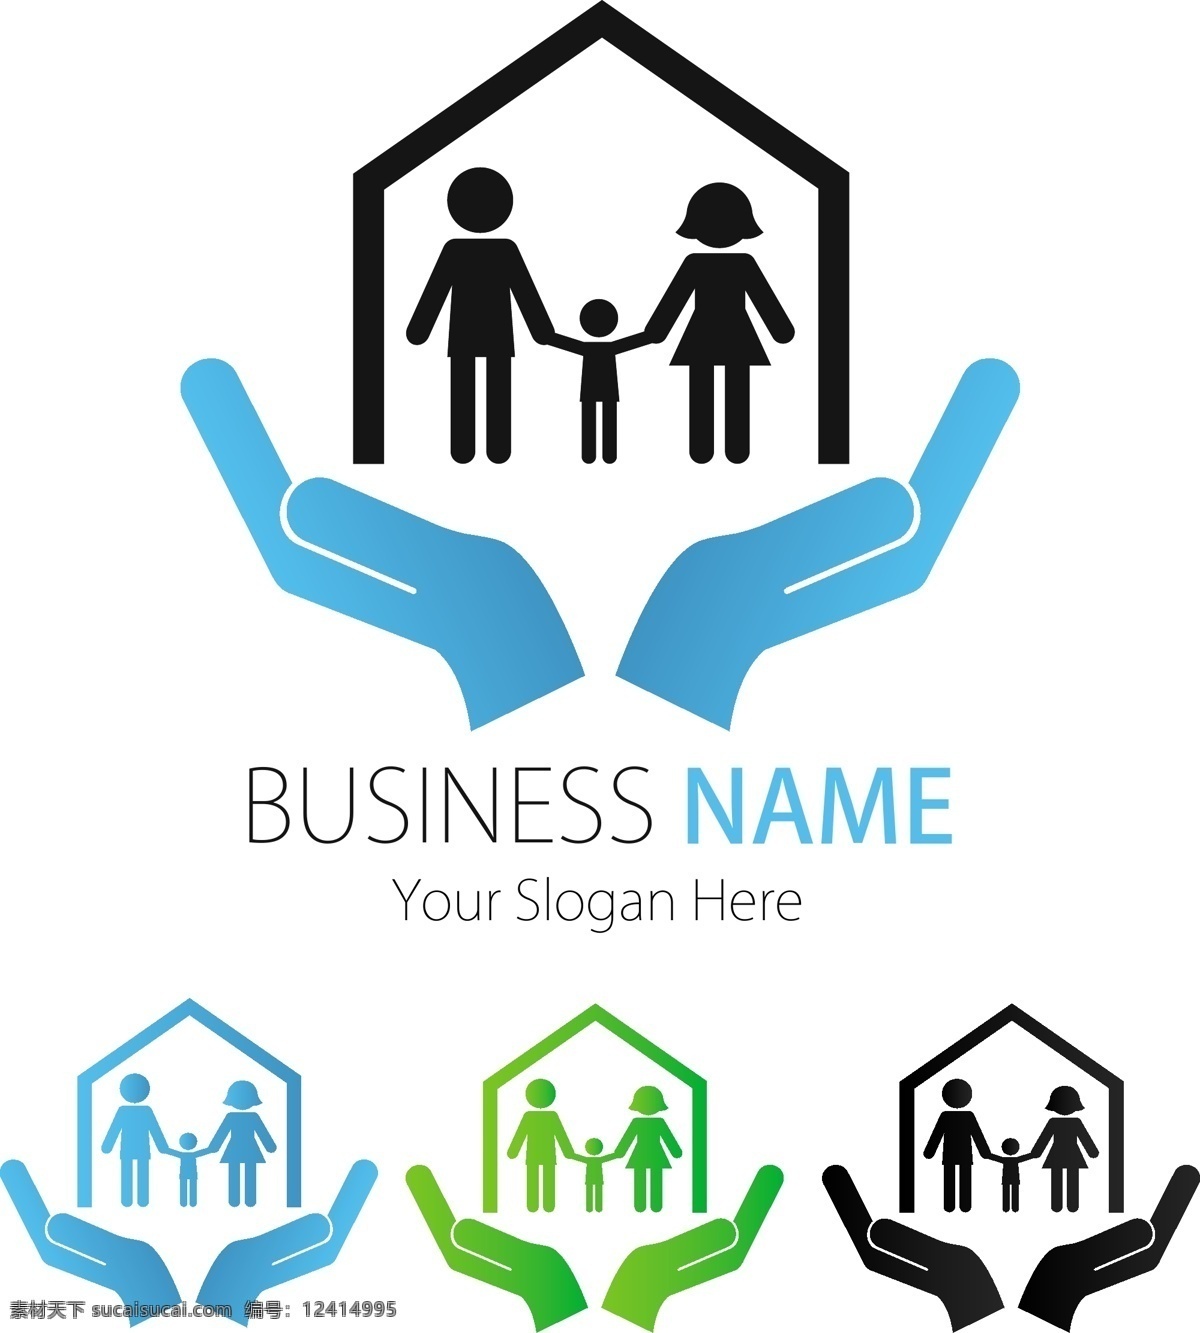 创意 图标 创意图标 三口之家 商务图标 商业图标 图标设计 一家人 抽象人物图标 网页 公司 企业 矢量图